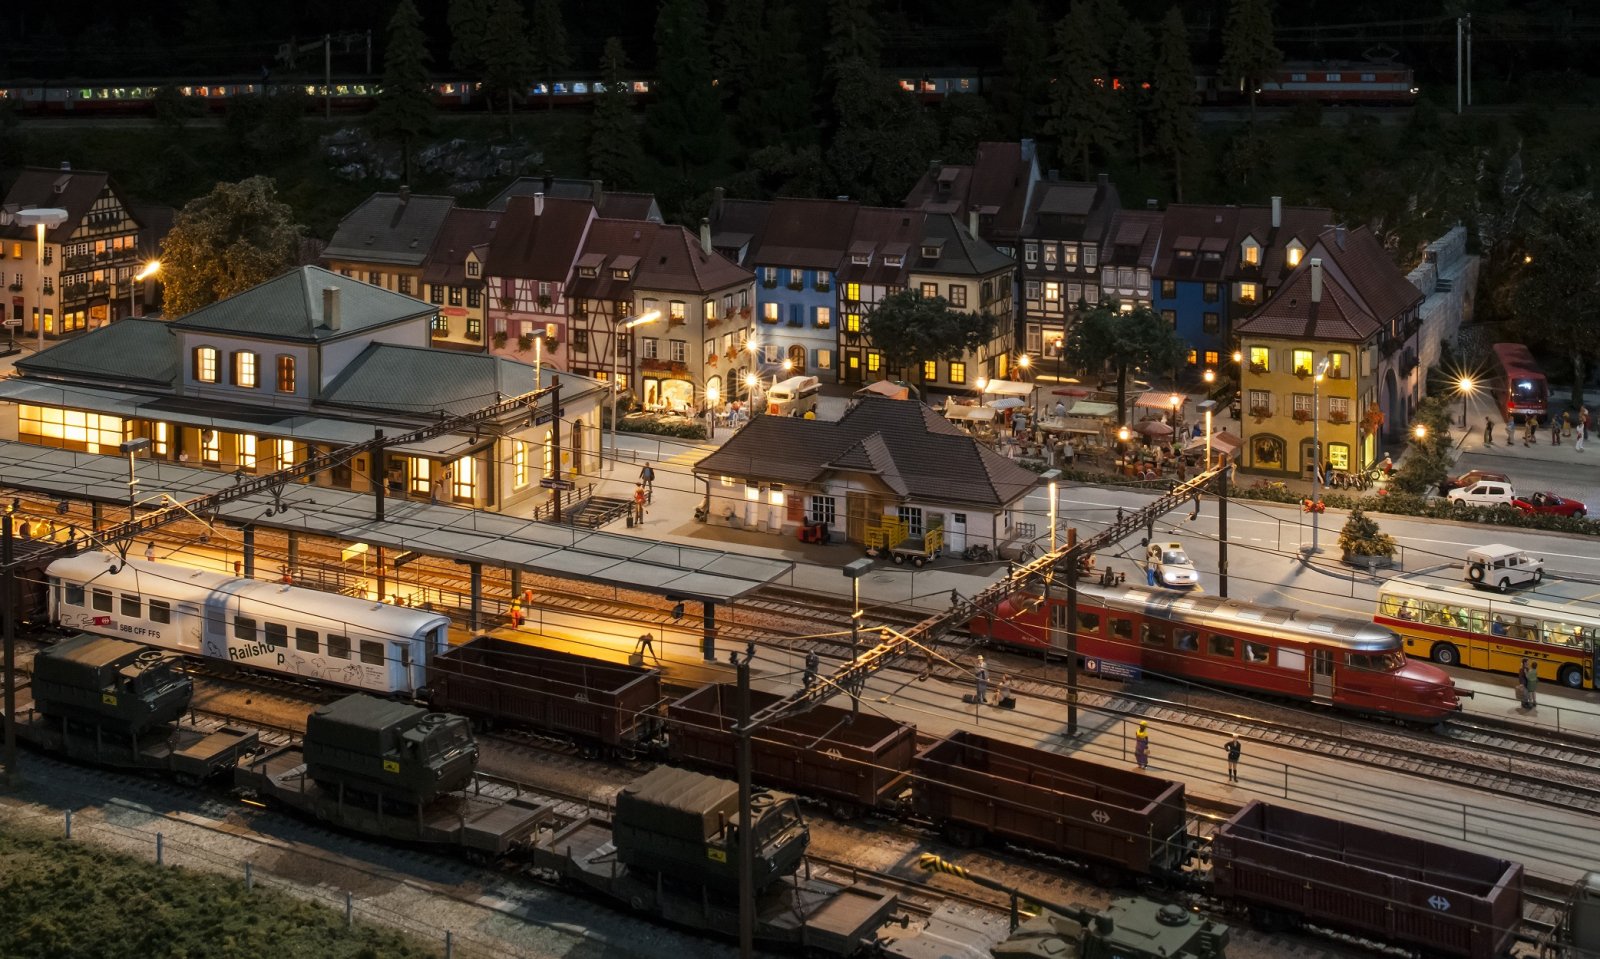 Modelleisenbahn / Chemins de fer du Kaeserberg bei Nacht